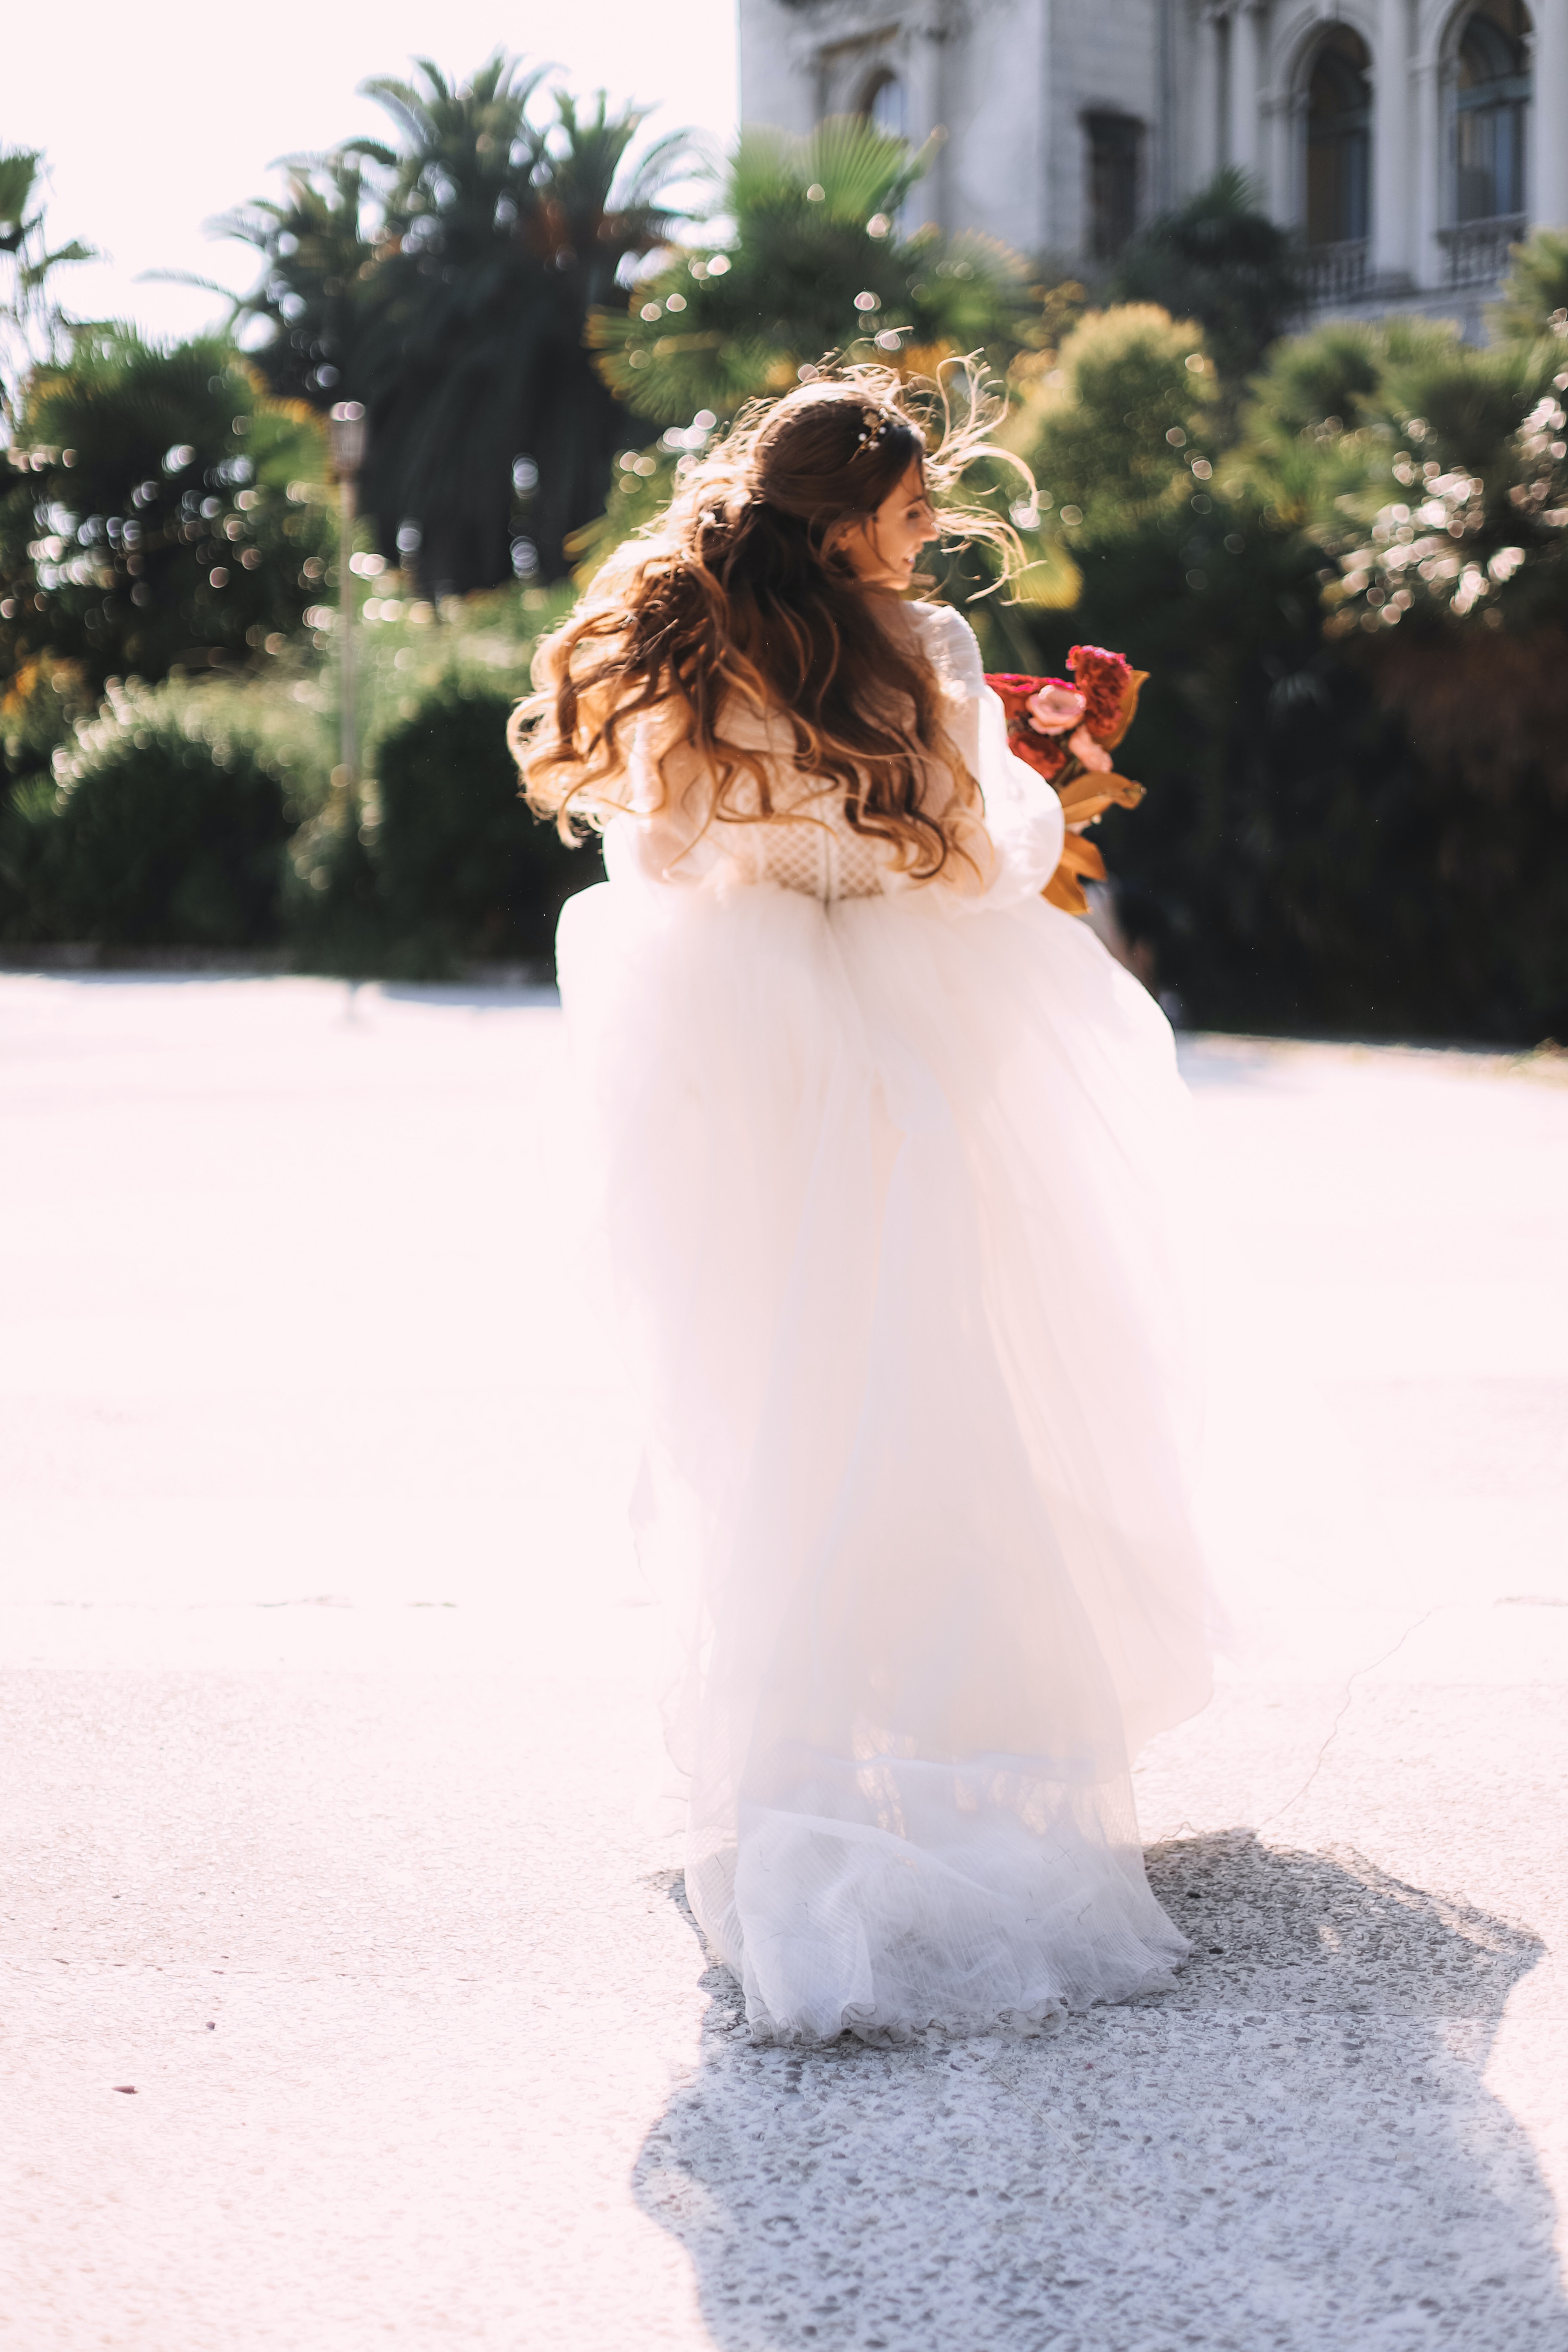 Bride running away | Source: Pexels